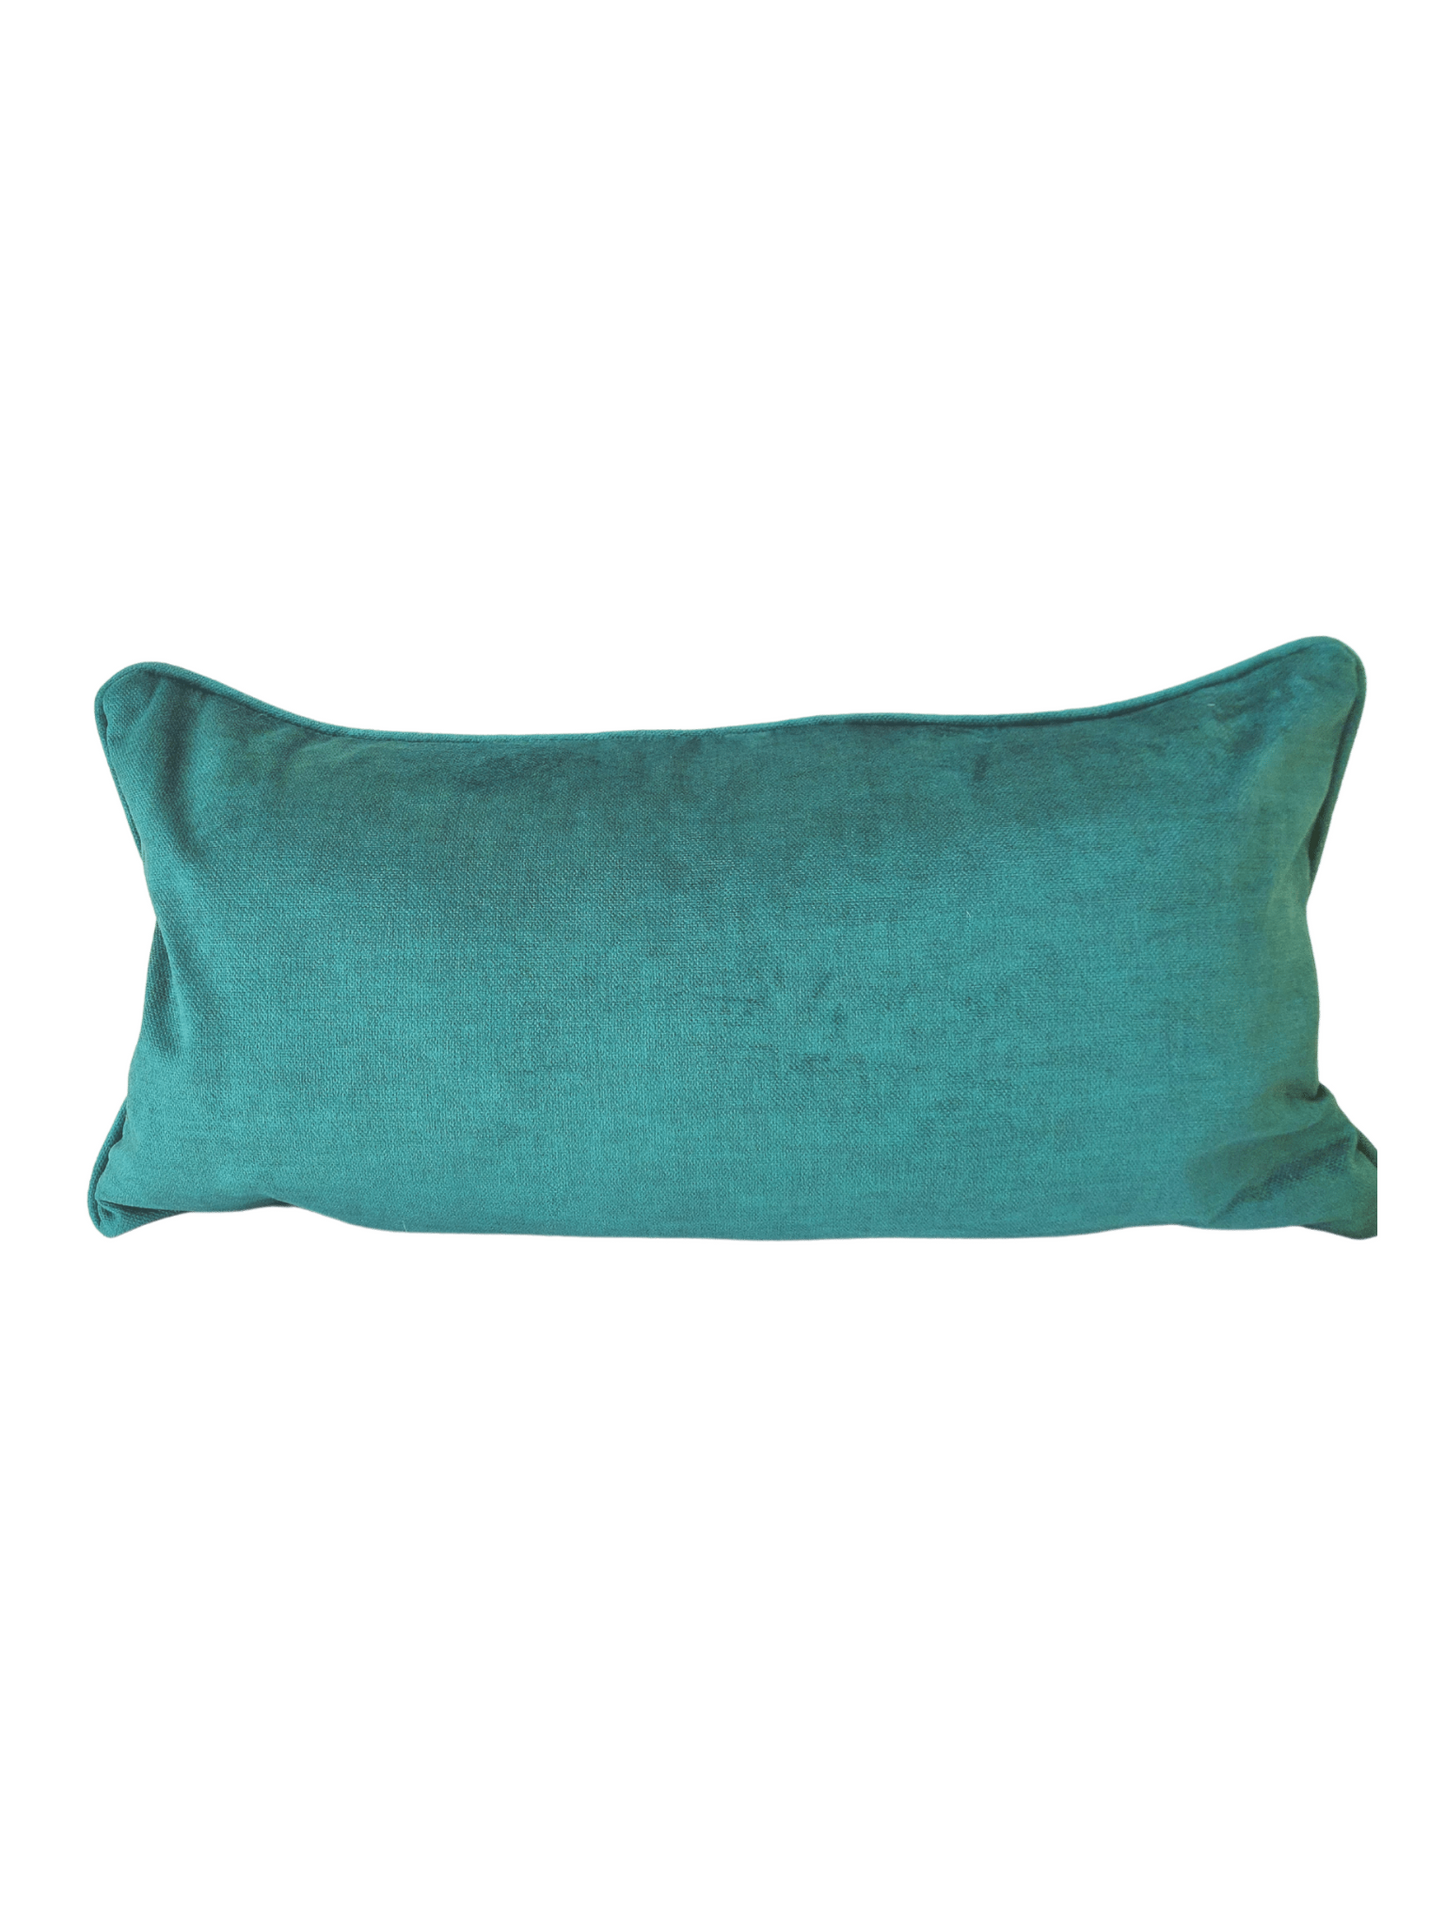 Emerald green cushion